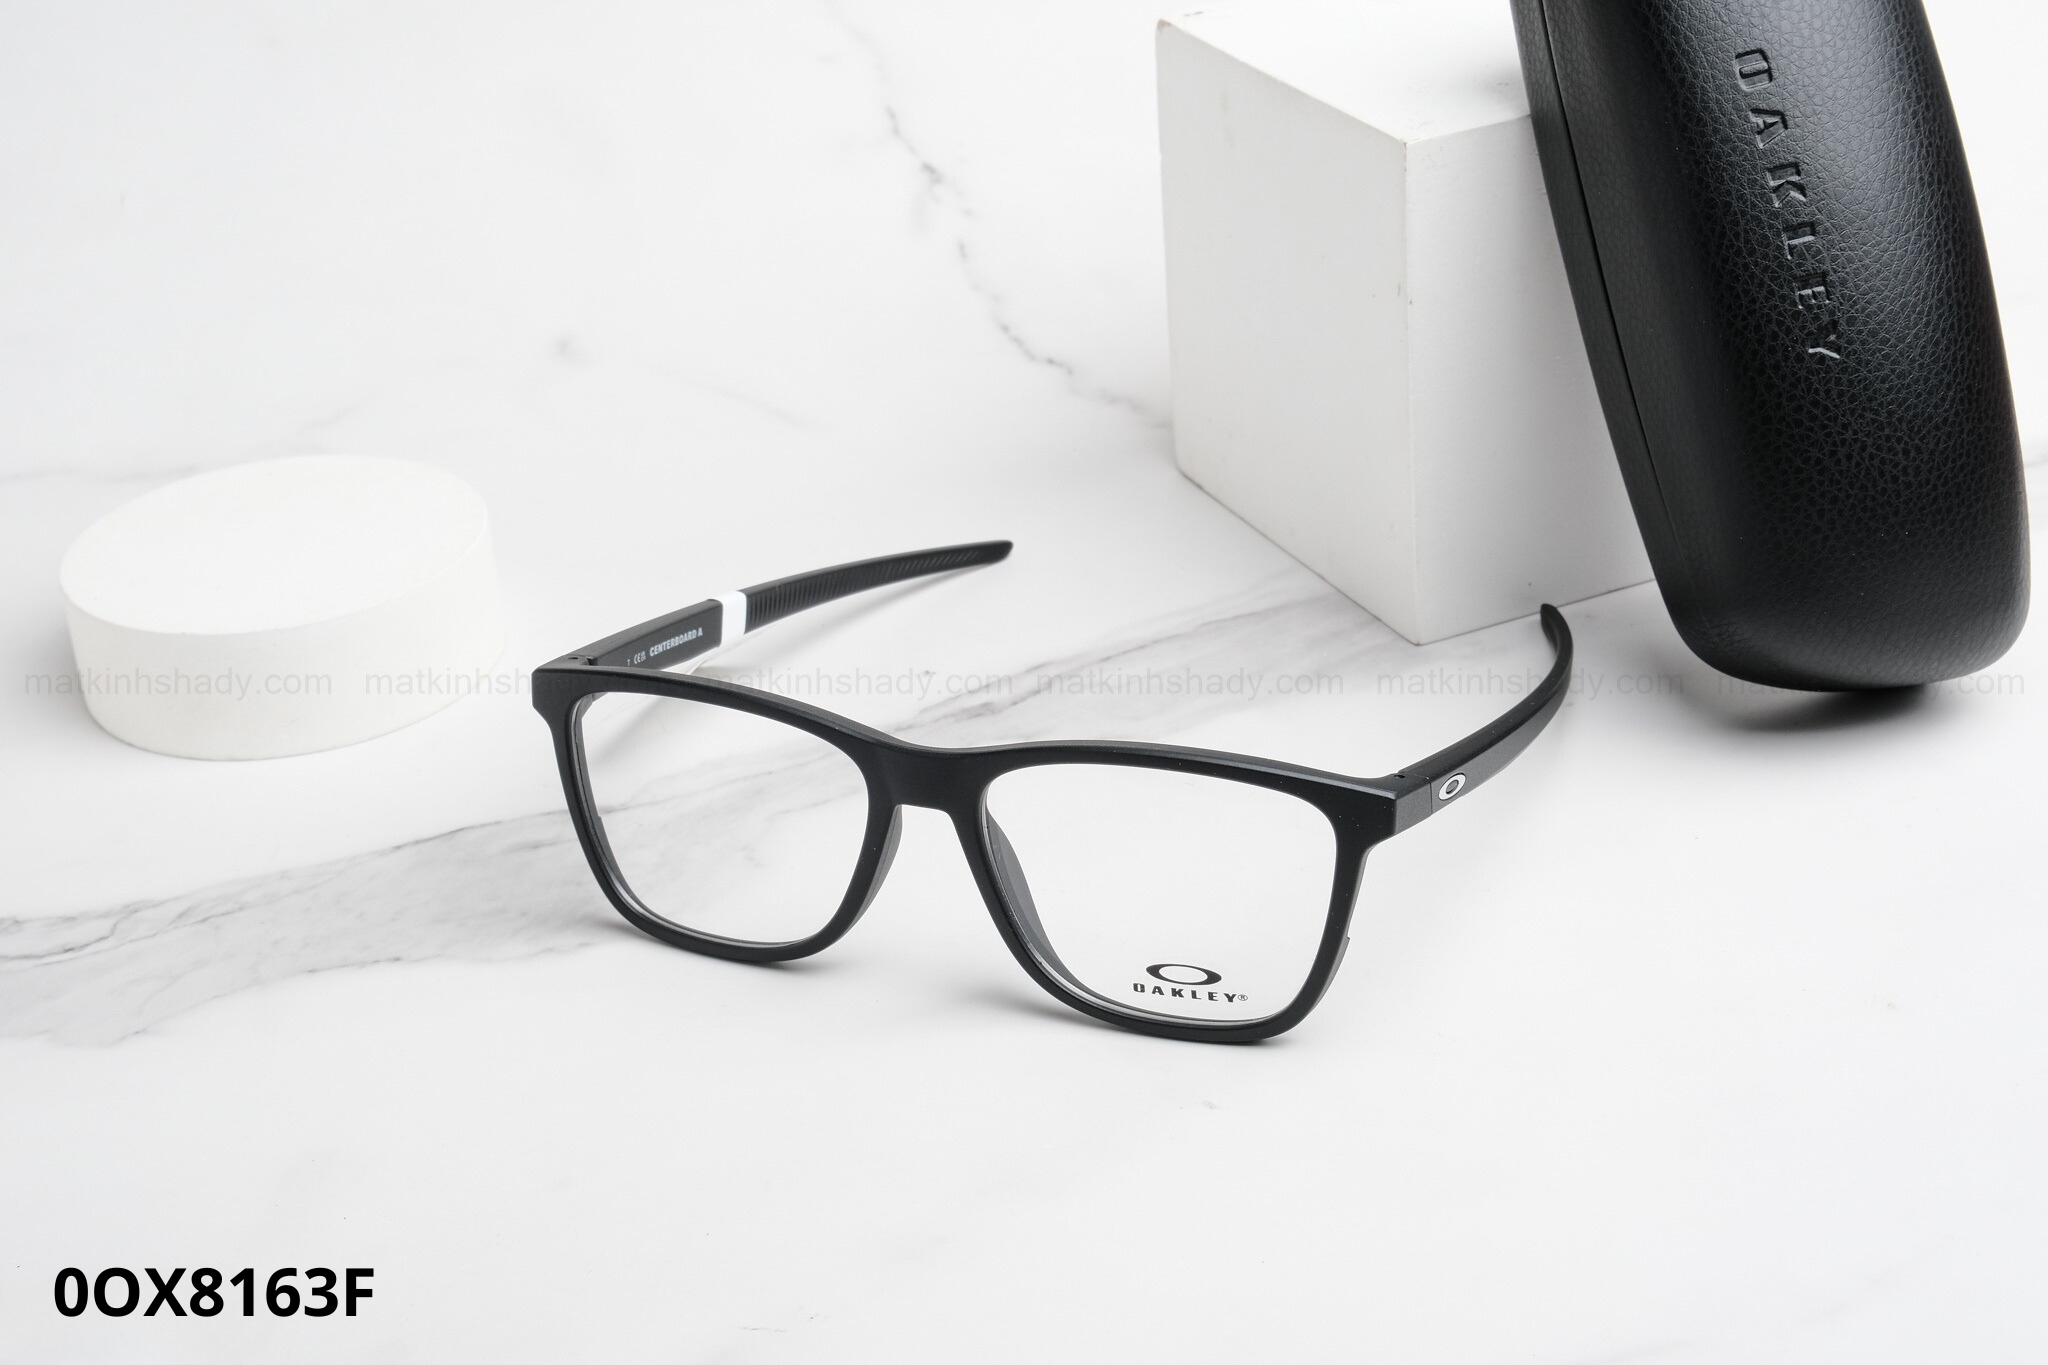  Oakley Eyewear - Glasses - 0OX8163 